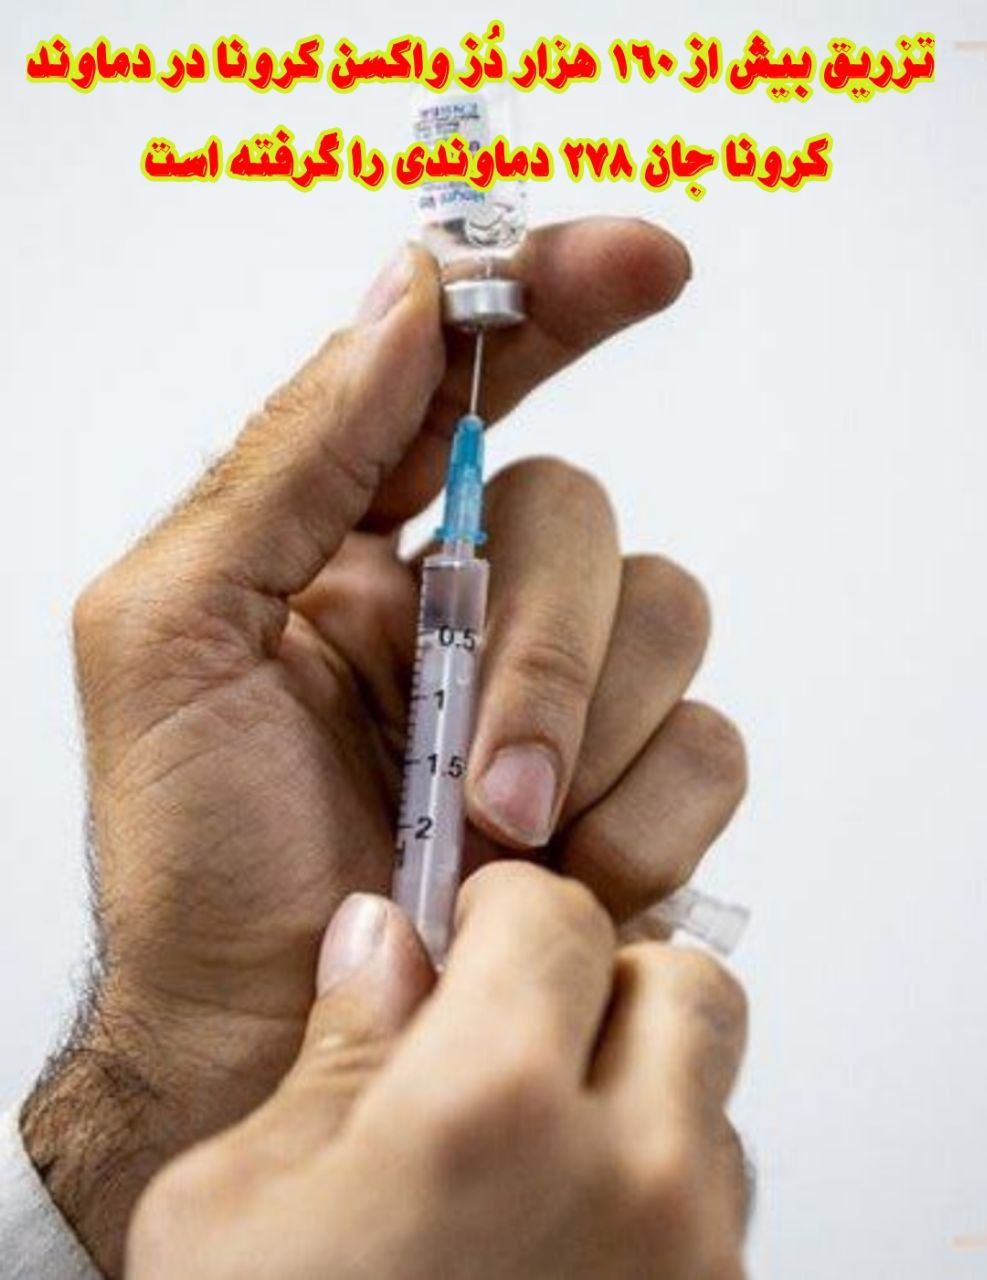 تزریق بیش از ۱۶۰ هزار دُز واکسن کرونا در دماوند/ کرونا جان ۲۷۸ دماوندی را گرفته است/ ۱۷۴ نفر تحت درمان هستند